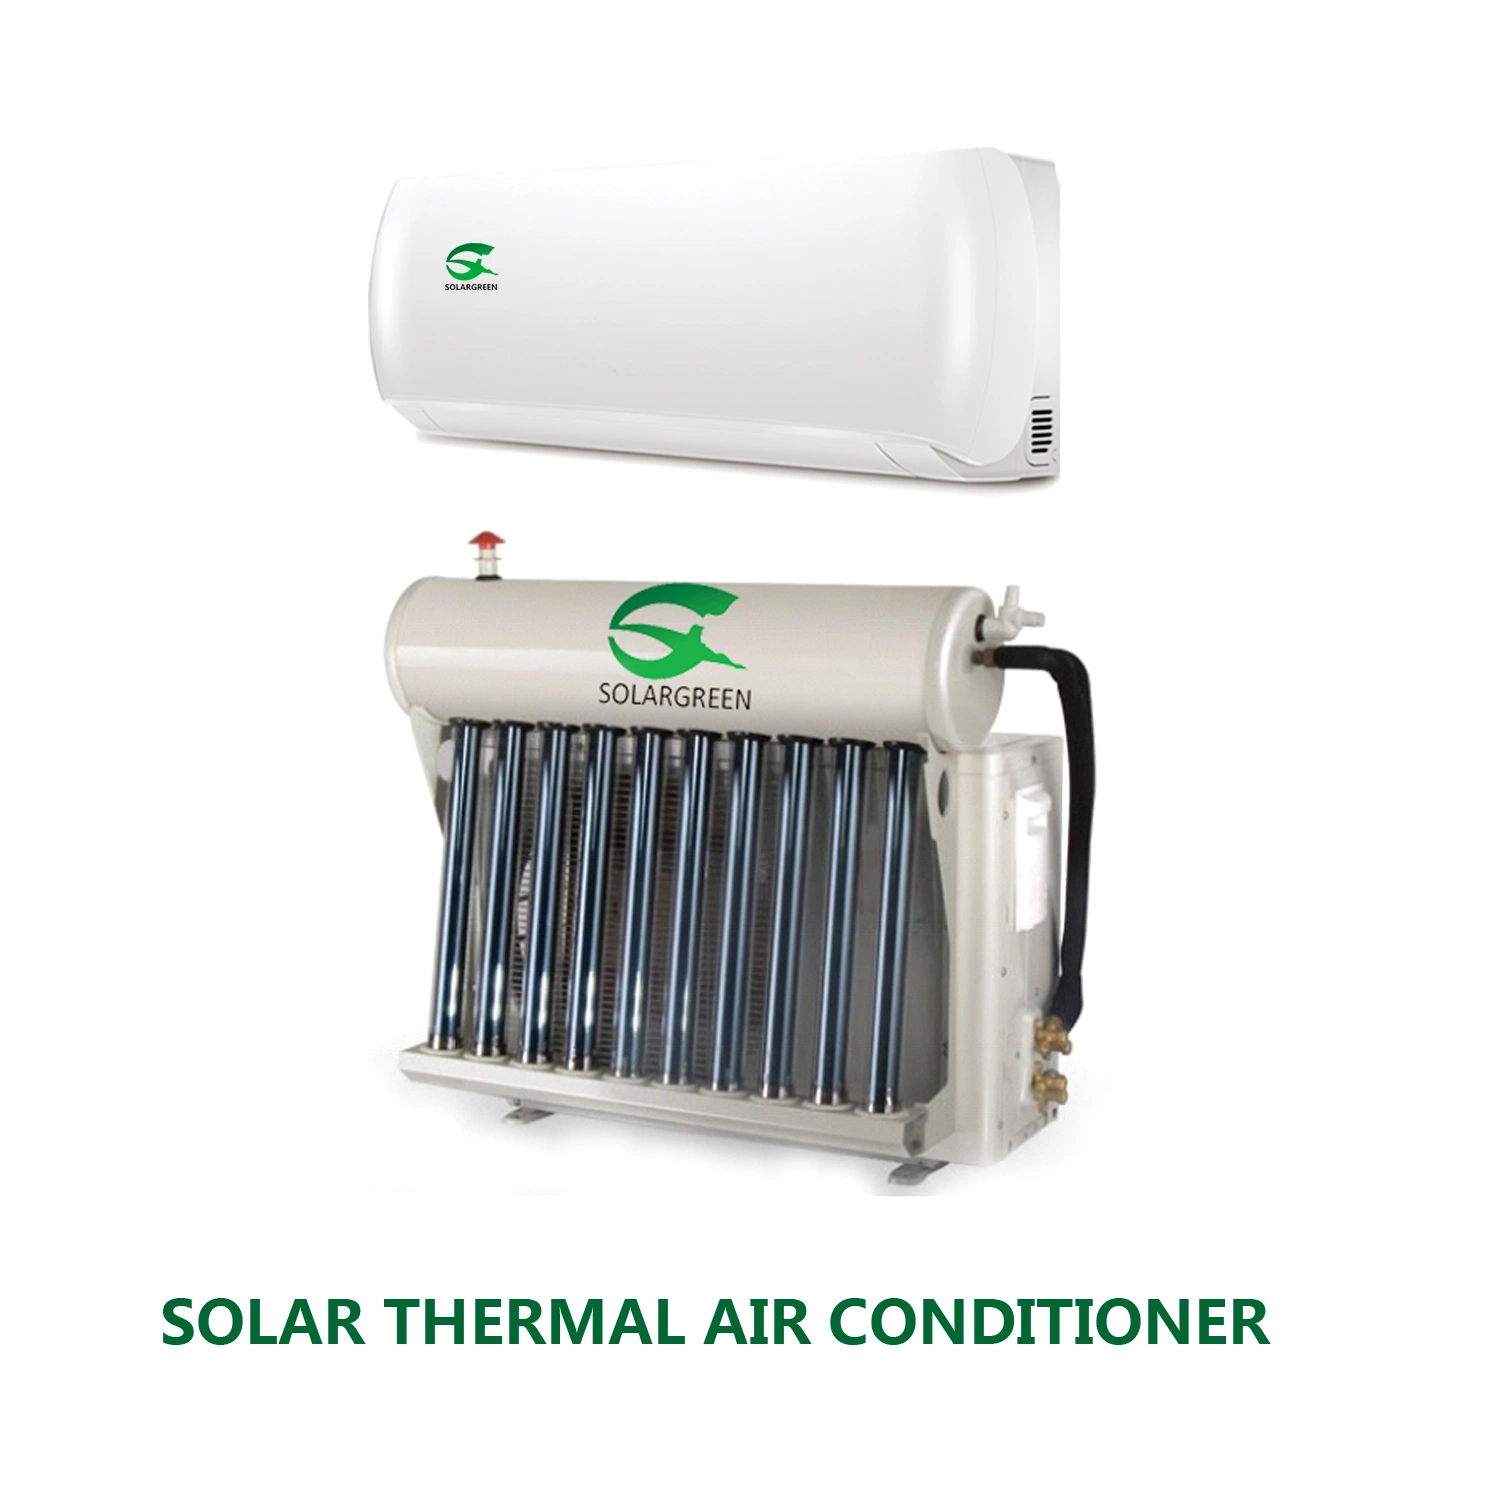 aquecedor solar de água Hybrid o tubo de vácuo da poupança de energia do Condicionador de Ar